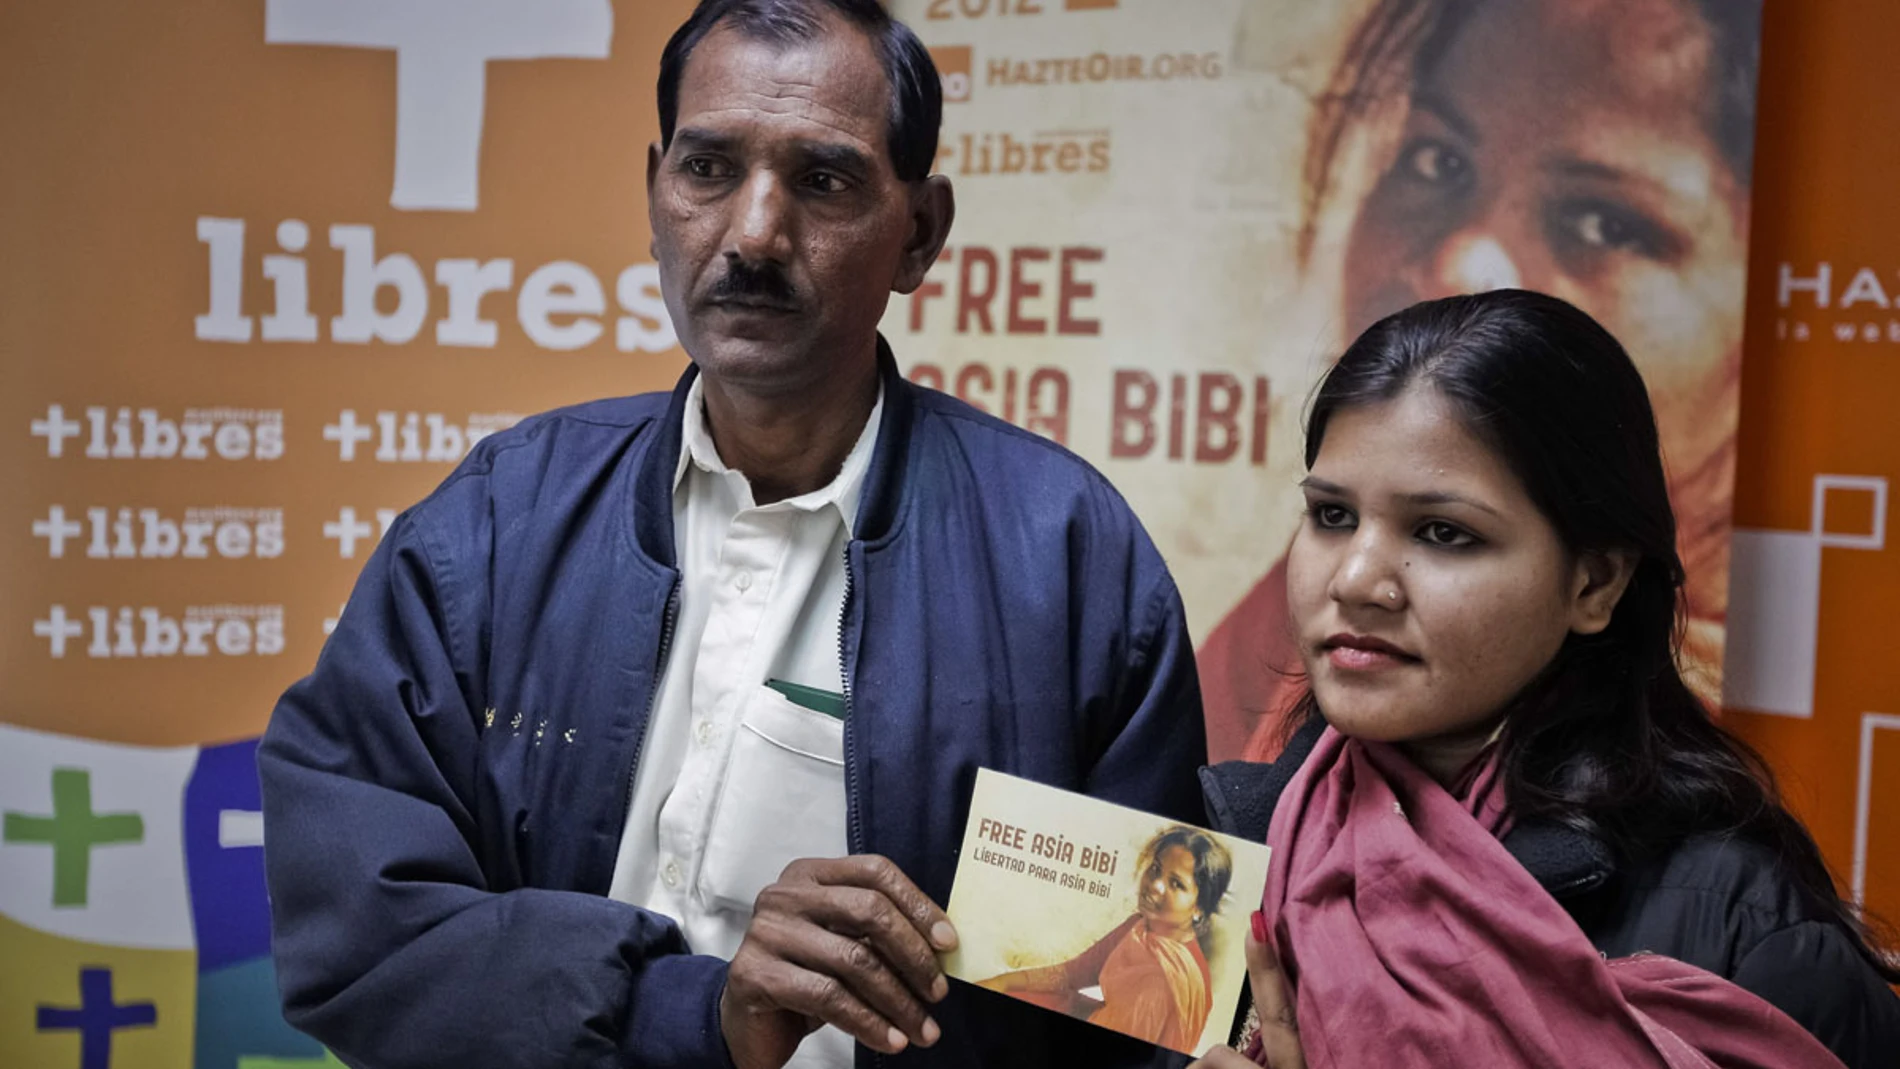 El Gobierno español traslada a la familia paquistaní condenada a muerte Asia Bibi